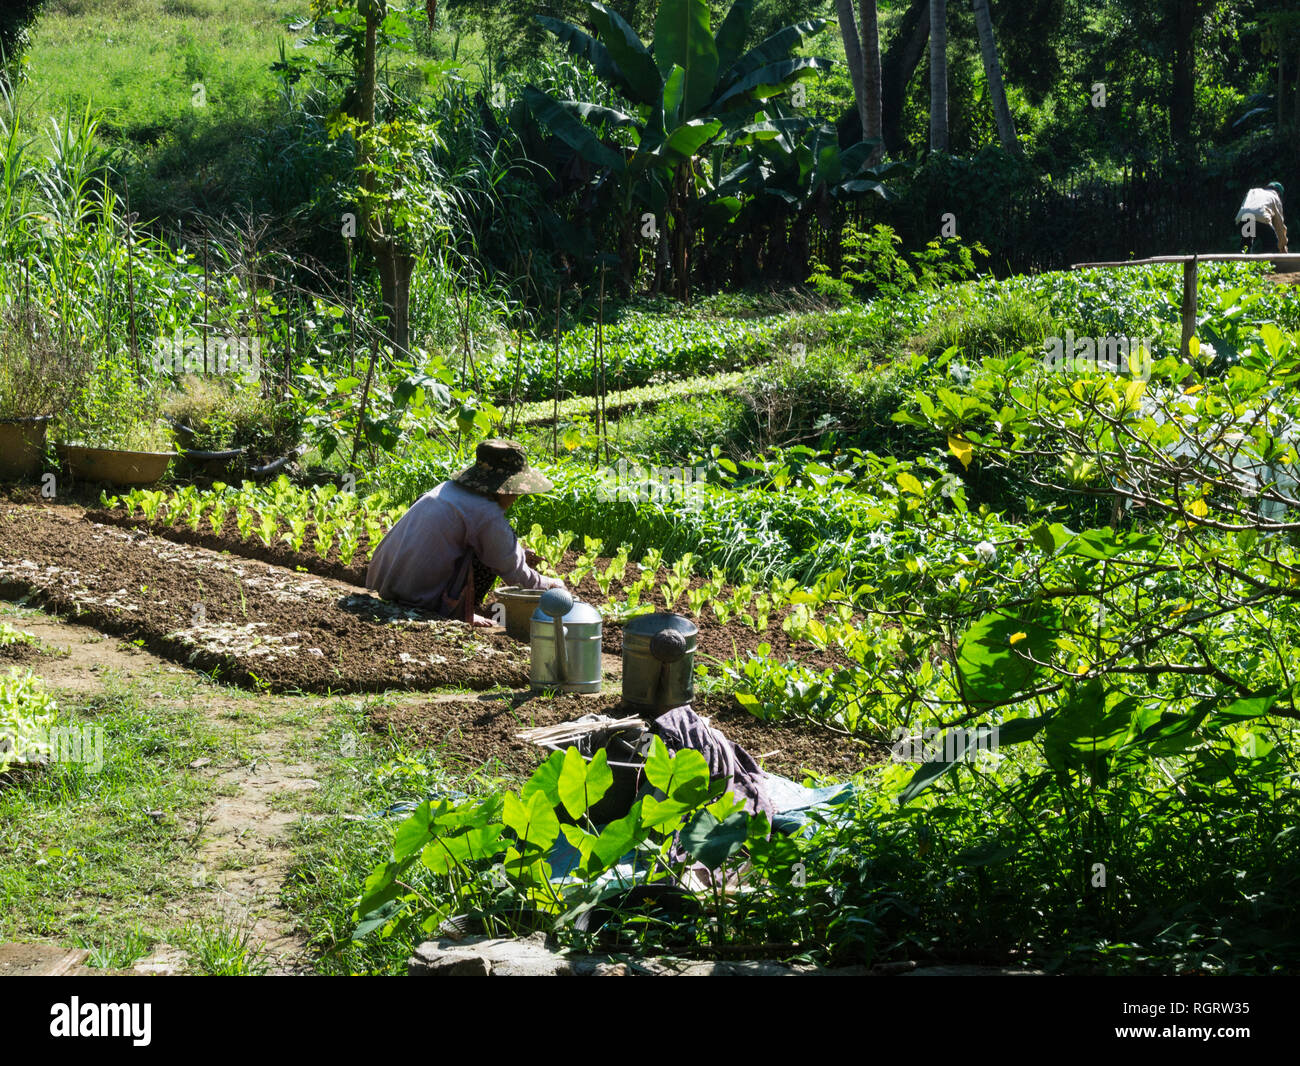 Femme laotienne la plantation des plantes de laitue dans culitivated petite parcelle de terre Asie Laos Luang Prabang Banque D'Images